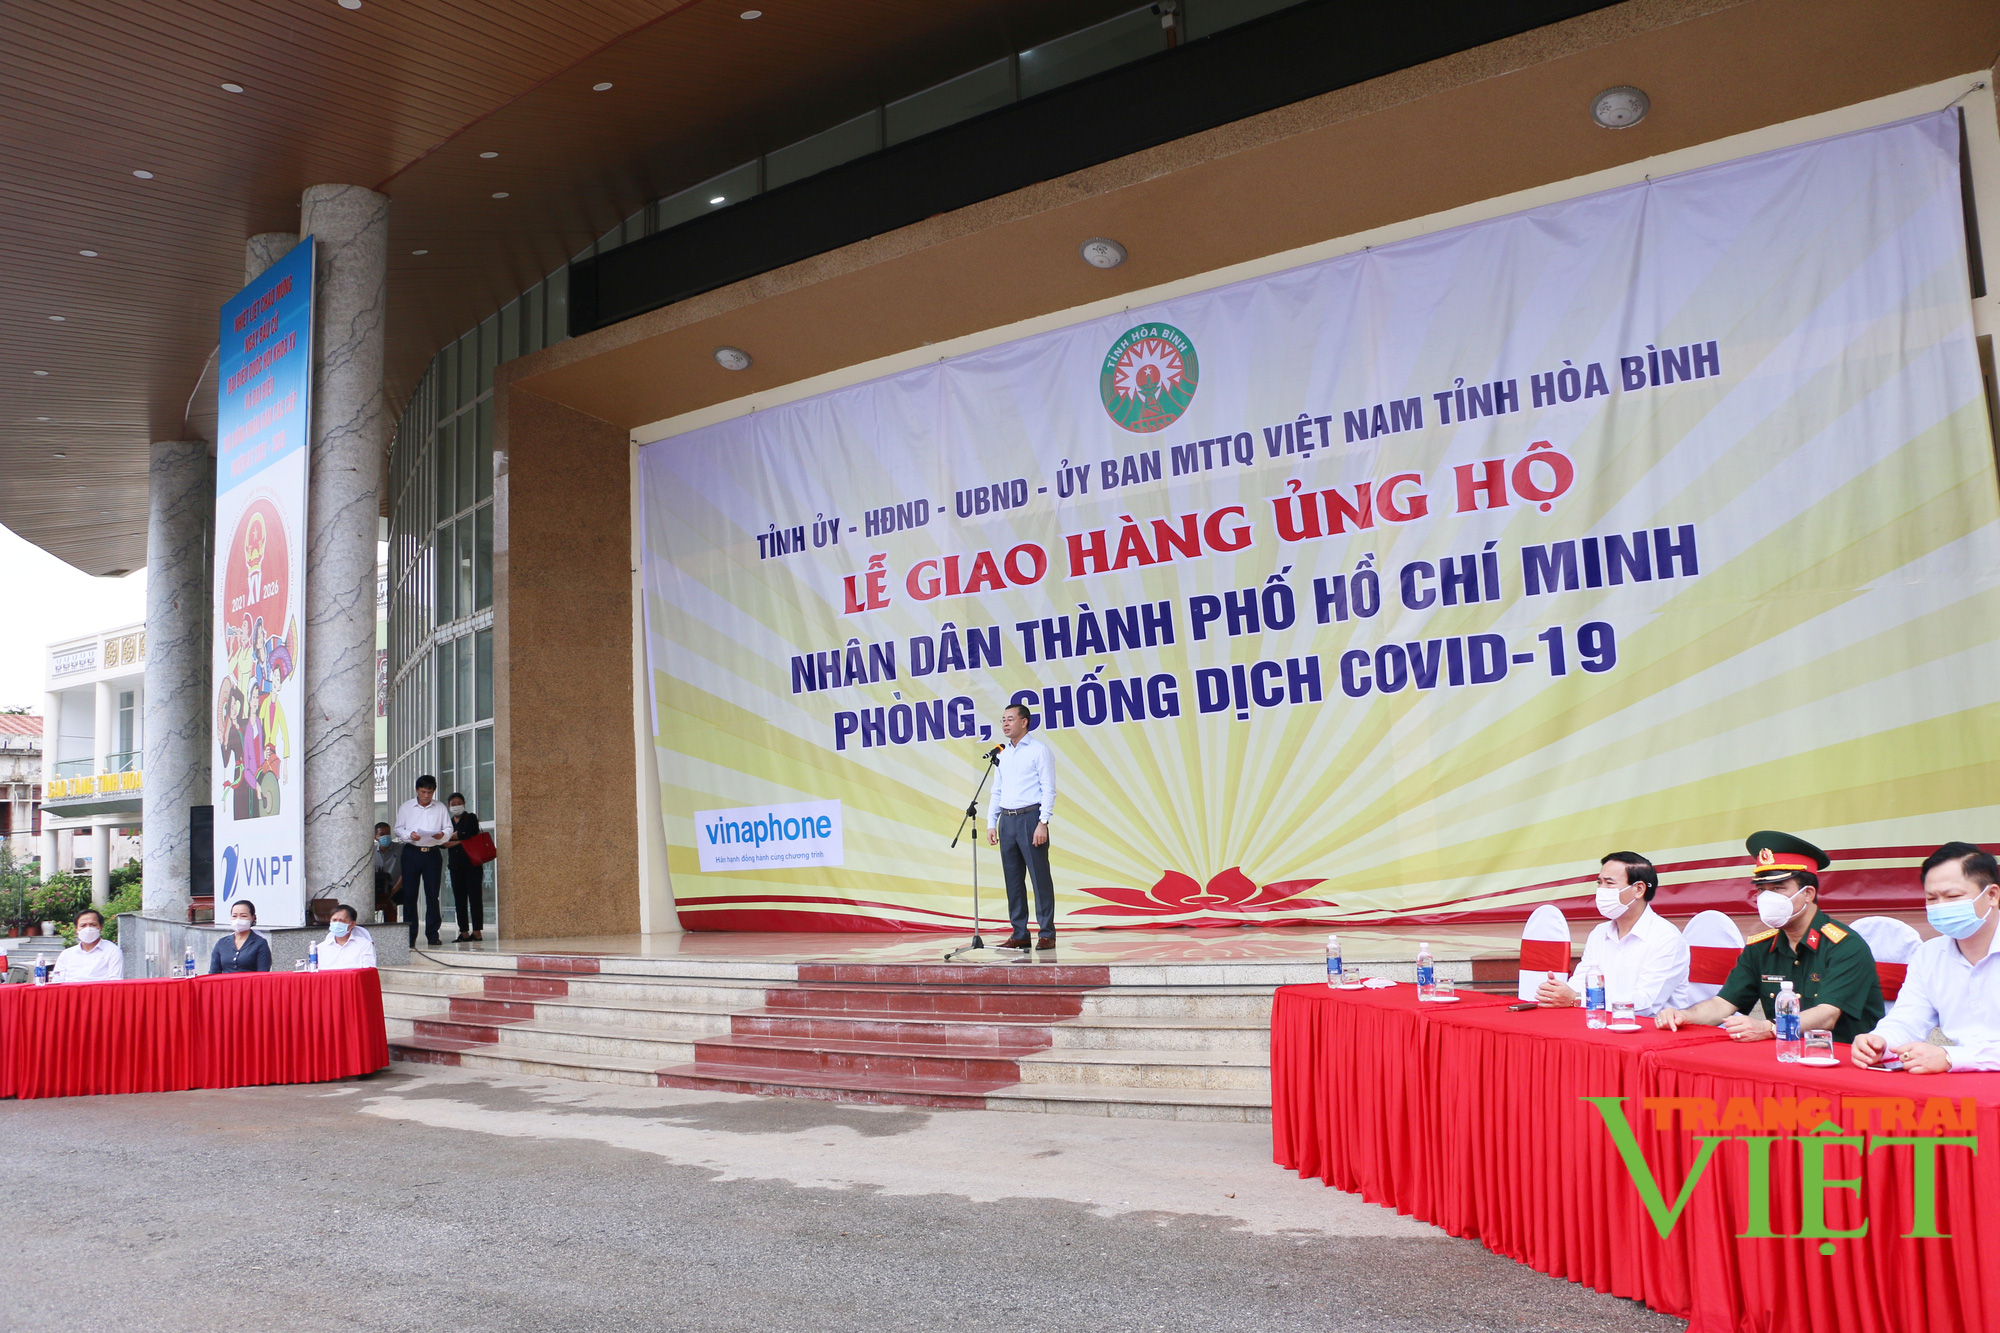 Hoà Bình: Ủng hộ tiền mặt và 300 tấn hàng hóa trị giá hơn 3,5 tỷ đồng cho TP. Hồ Chí Minh chống dịch Covid-19 - Ảnh 1.